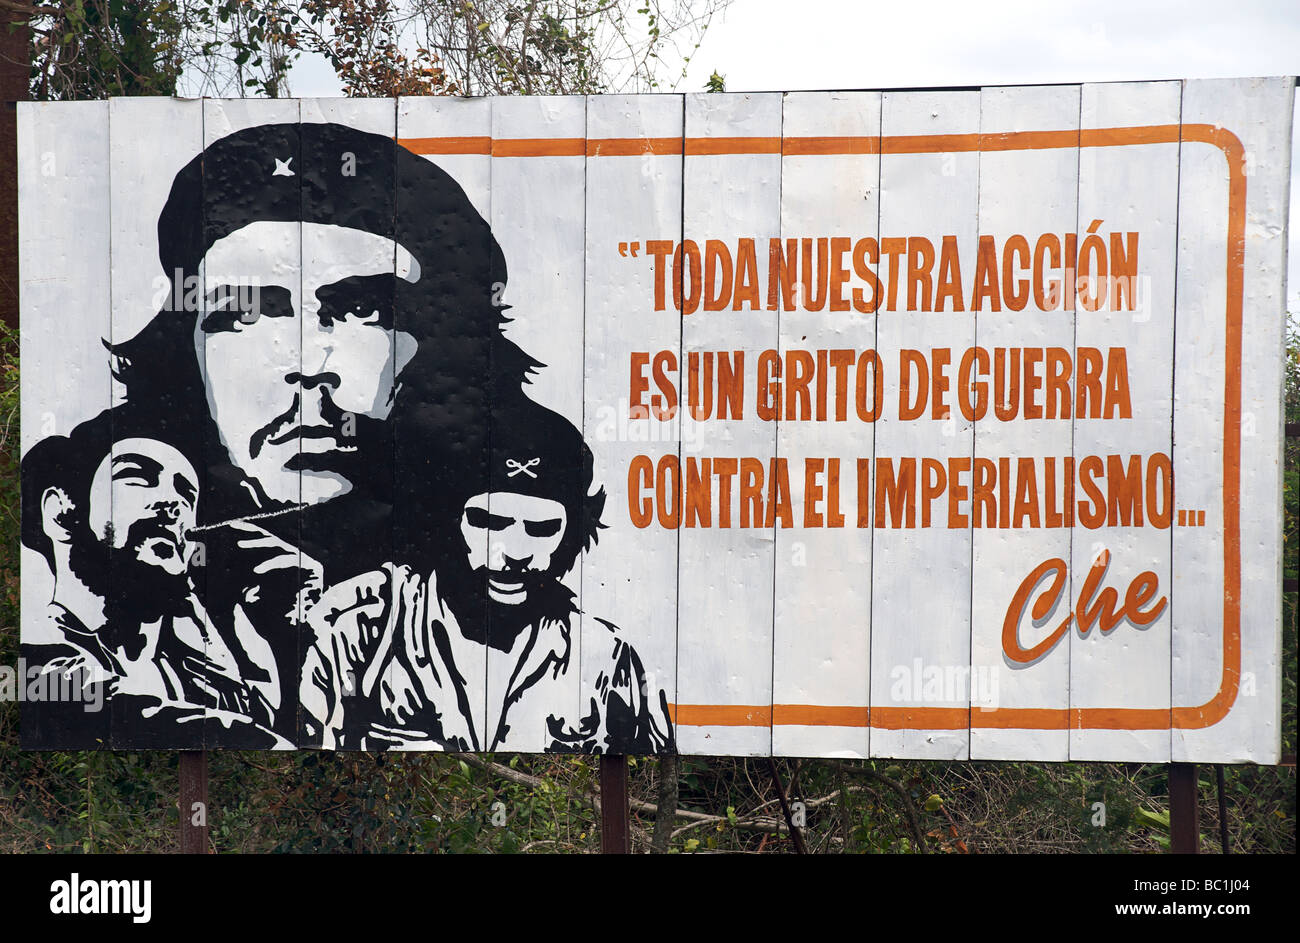 Panneau cubain avec citation de Che Guevara. TONO BUESTRA ACCION ES UN GRITO DE GUERRA CONTRA EL trauma social. CHE. CUBA Banque D'Images